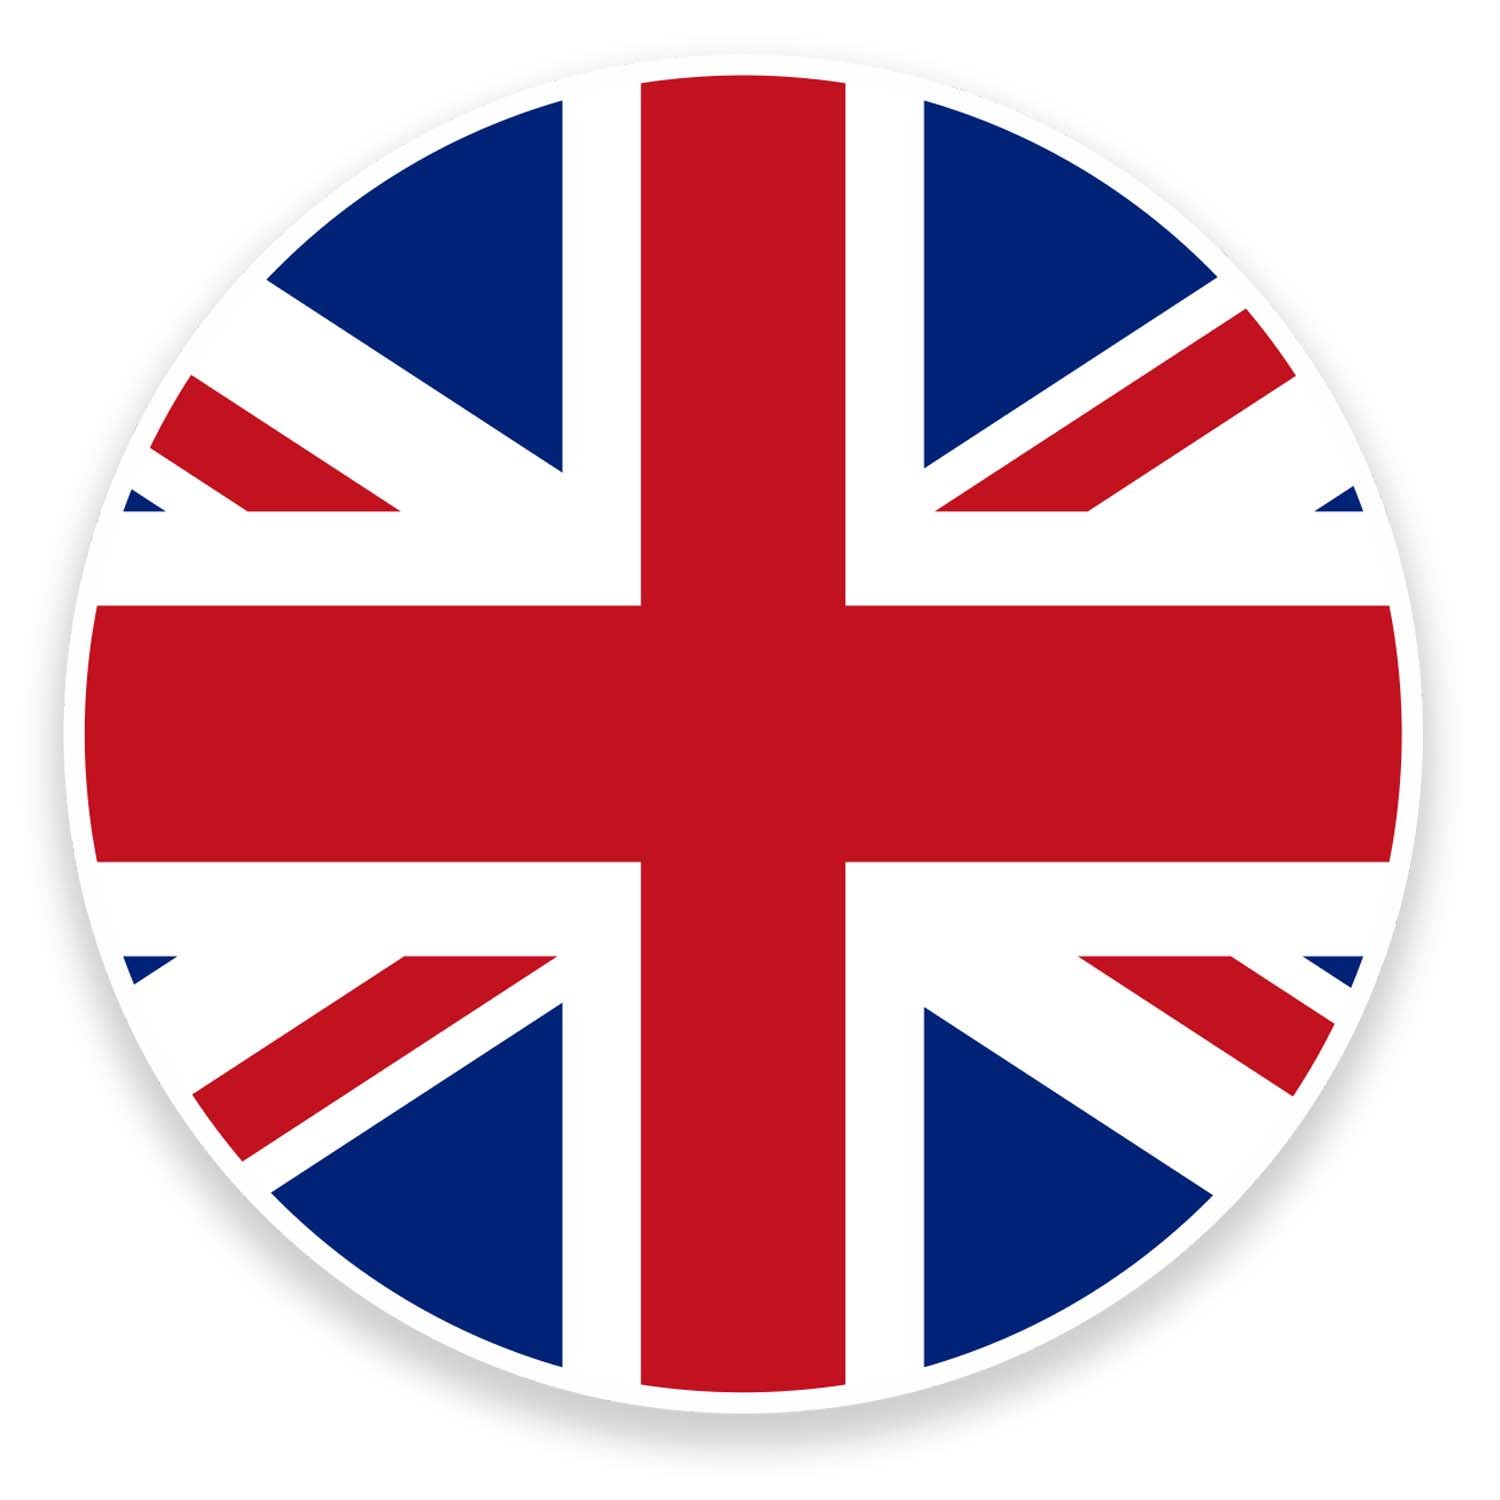 Vinyl-Aufkleber, Motiv: Union Jack, UK-Flagge, für Laptop, Auto, Gepäck, 9067, 10 cm breit x 10 cm hoch, 2 Stück von DestinationVinyl